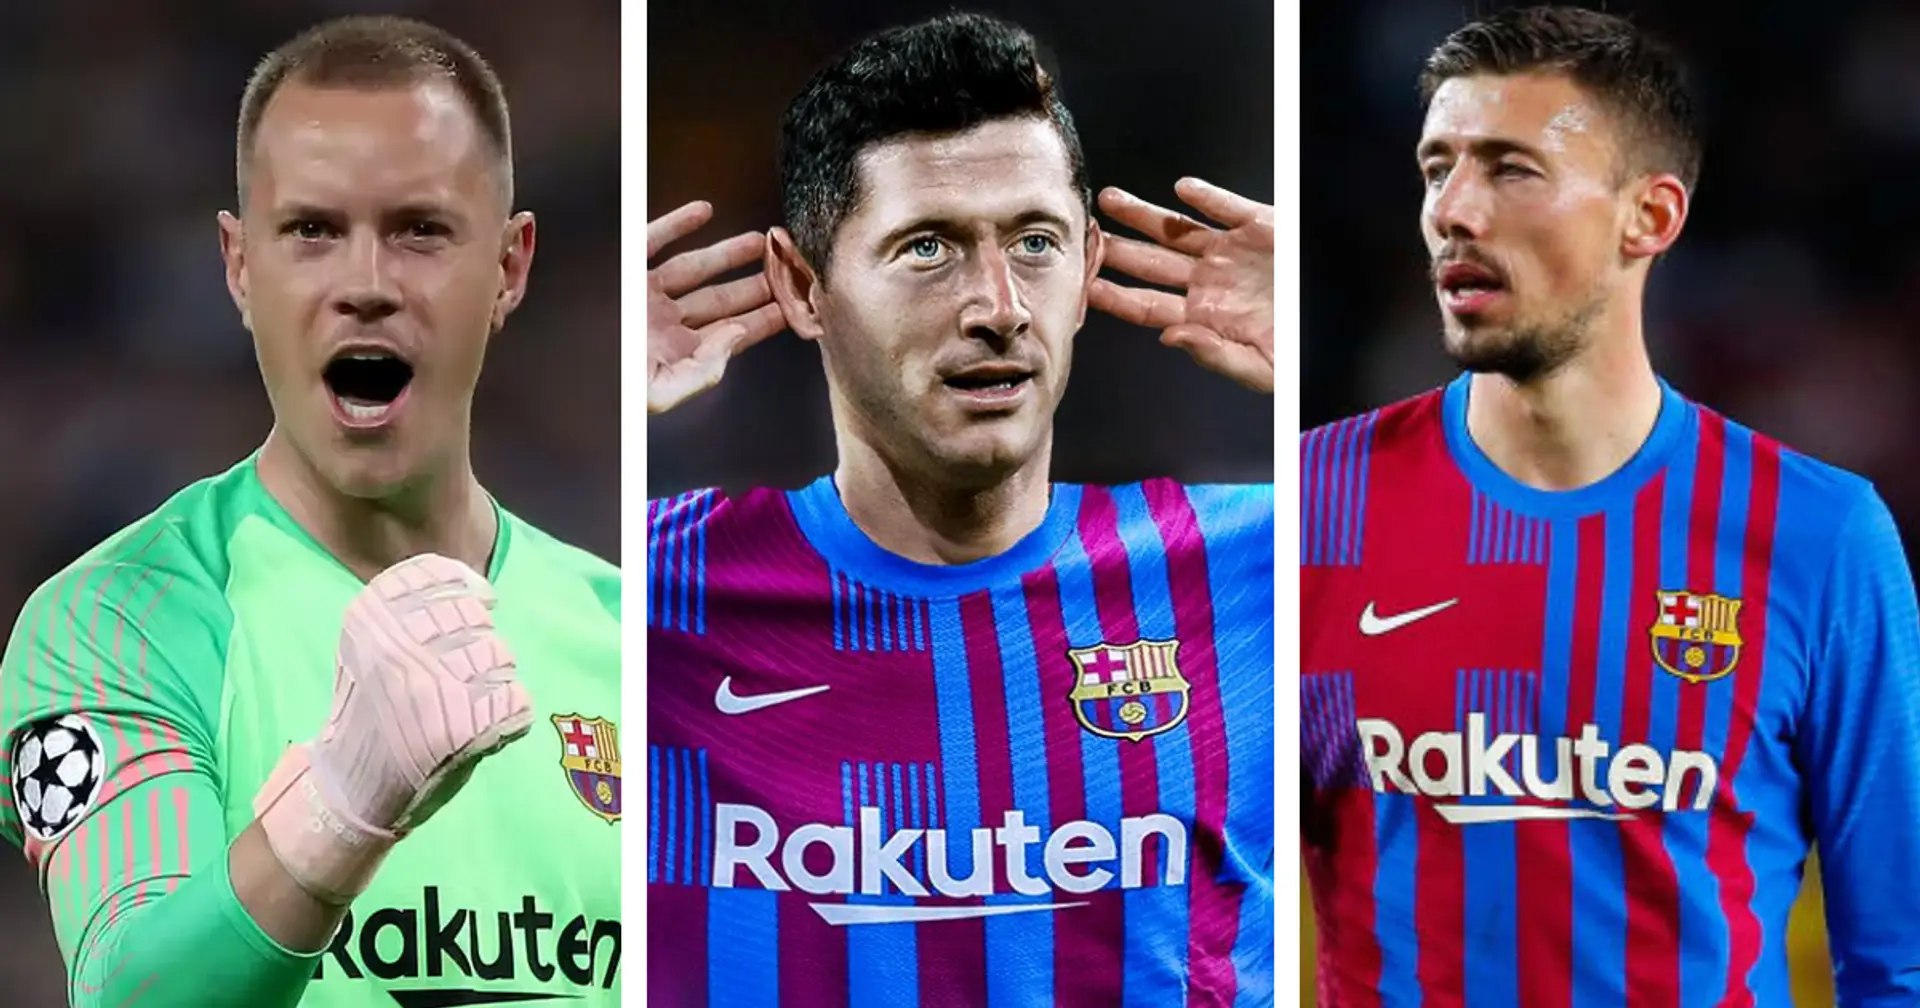 De gardien de but à attaquant: le plus gros problème du Barça dans tous les secteurs révélés